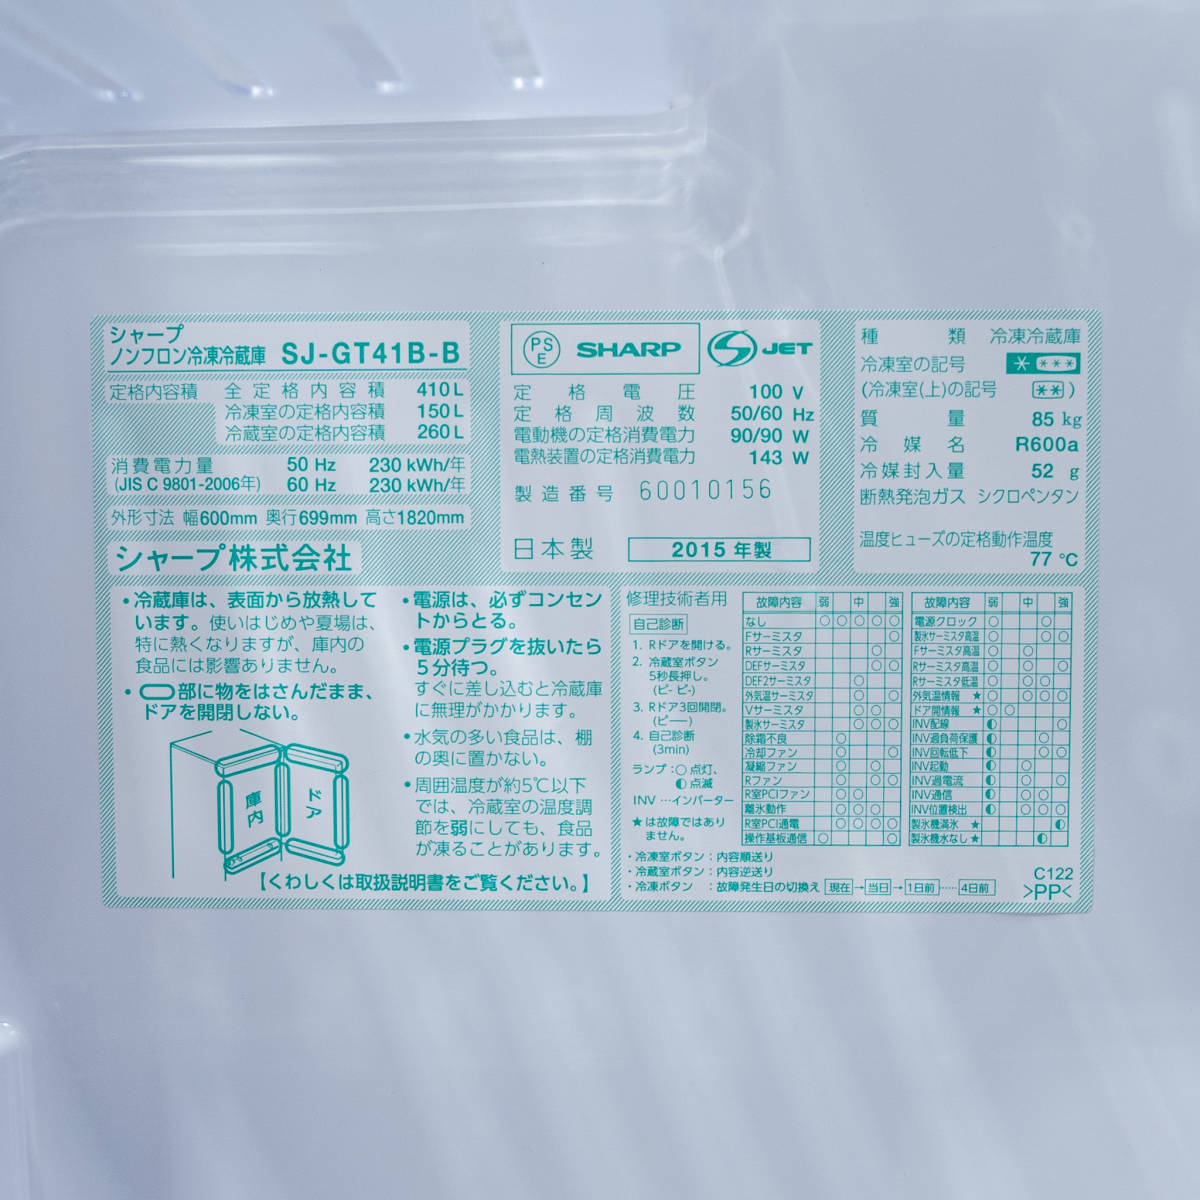 【中古品】SHARP シャープ プラズマクラスター 冷蔵庫 SJ-GT41B-B 410L 4ドア ピュアブラック 15年製 定価14万_画像10